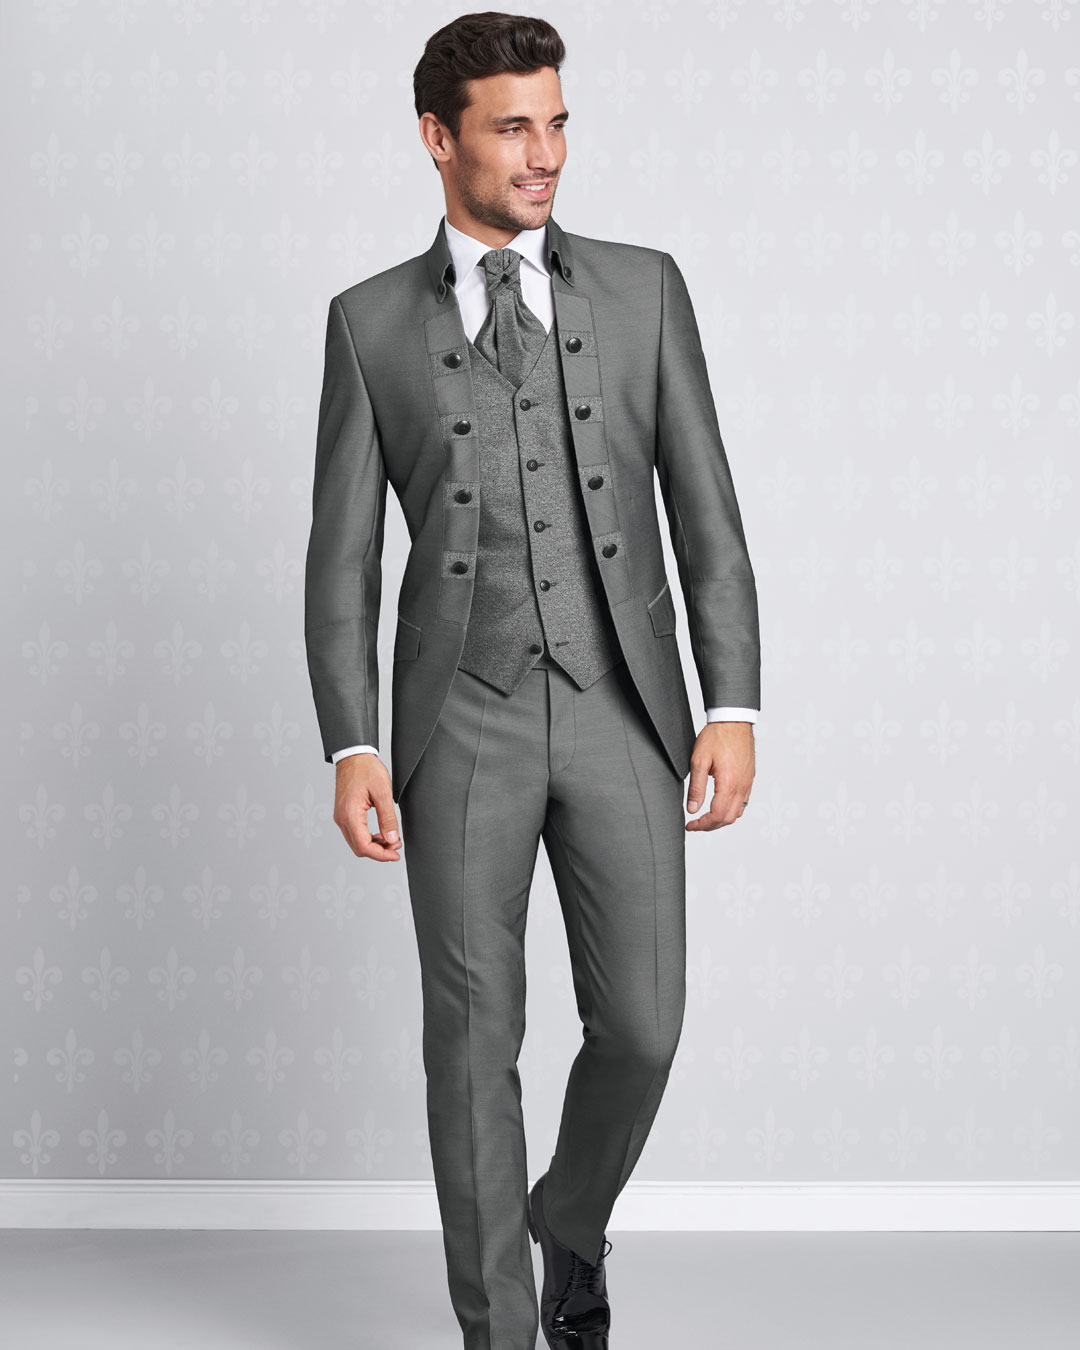 Tziacco - Der Anzug zur Hochzeit